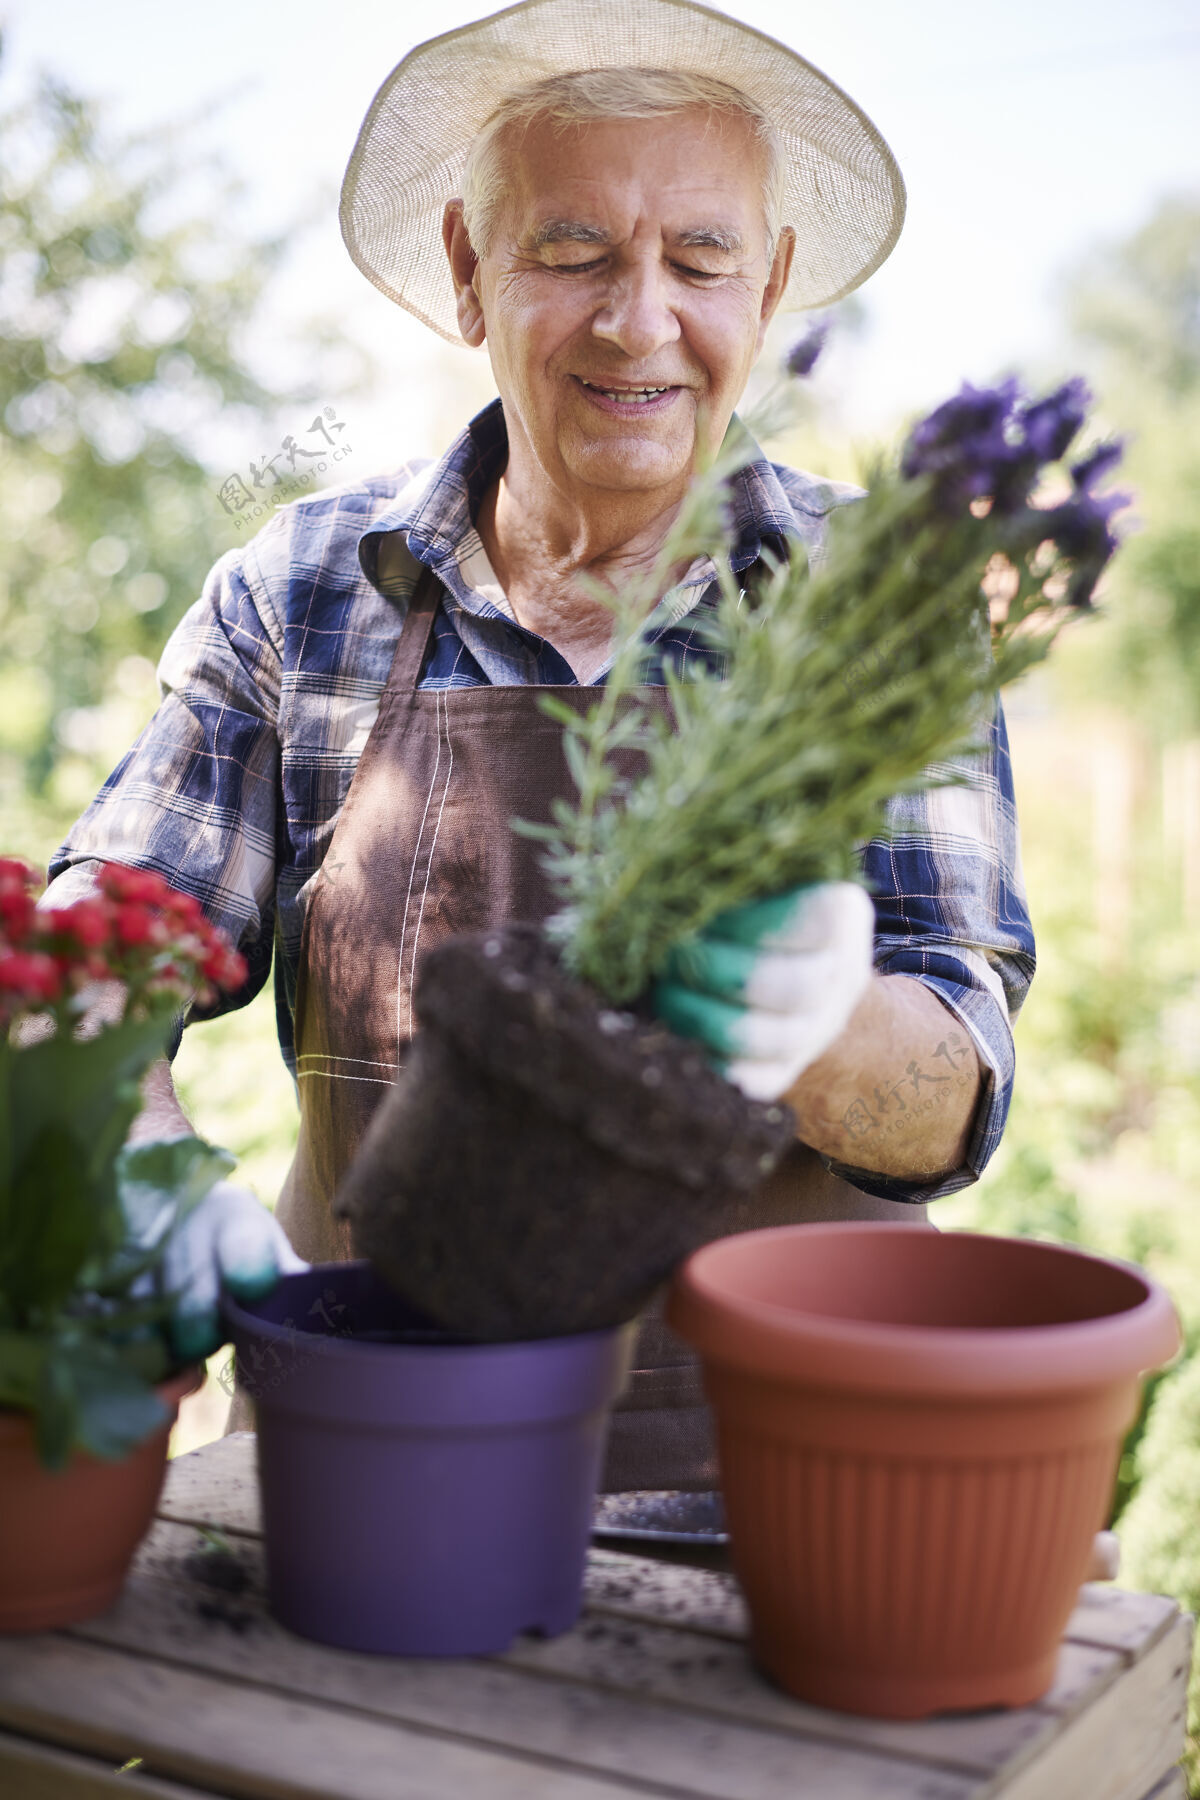 健康生活方式拿着花在地里干活的老人职业木微笑